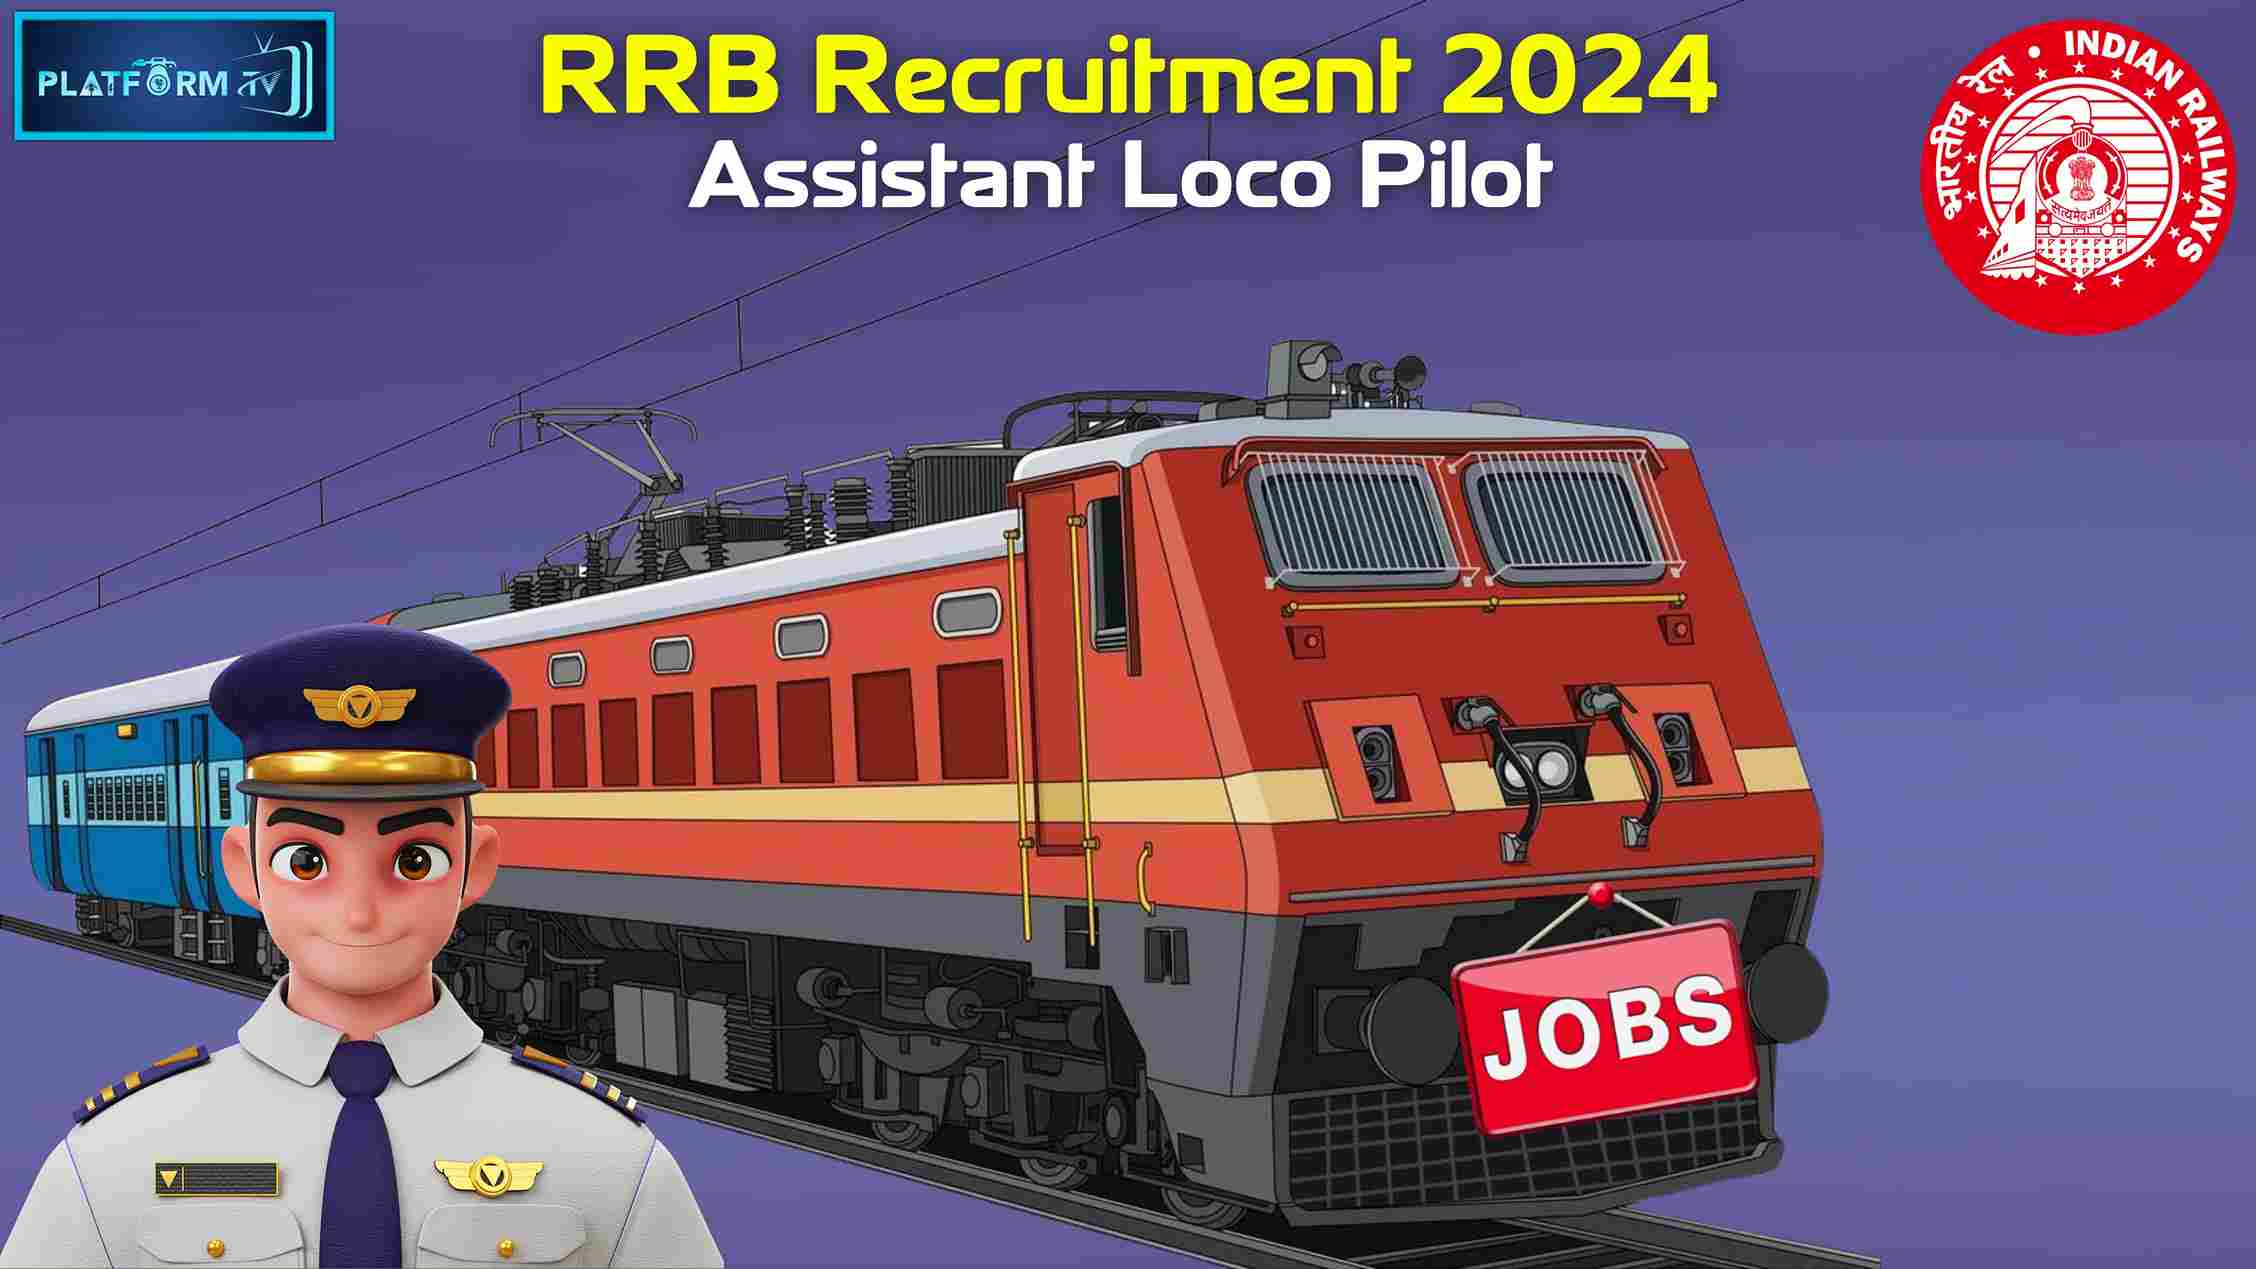 RRB ALP Jobs 2024 - Platform Tamil